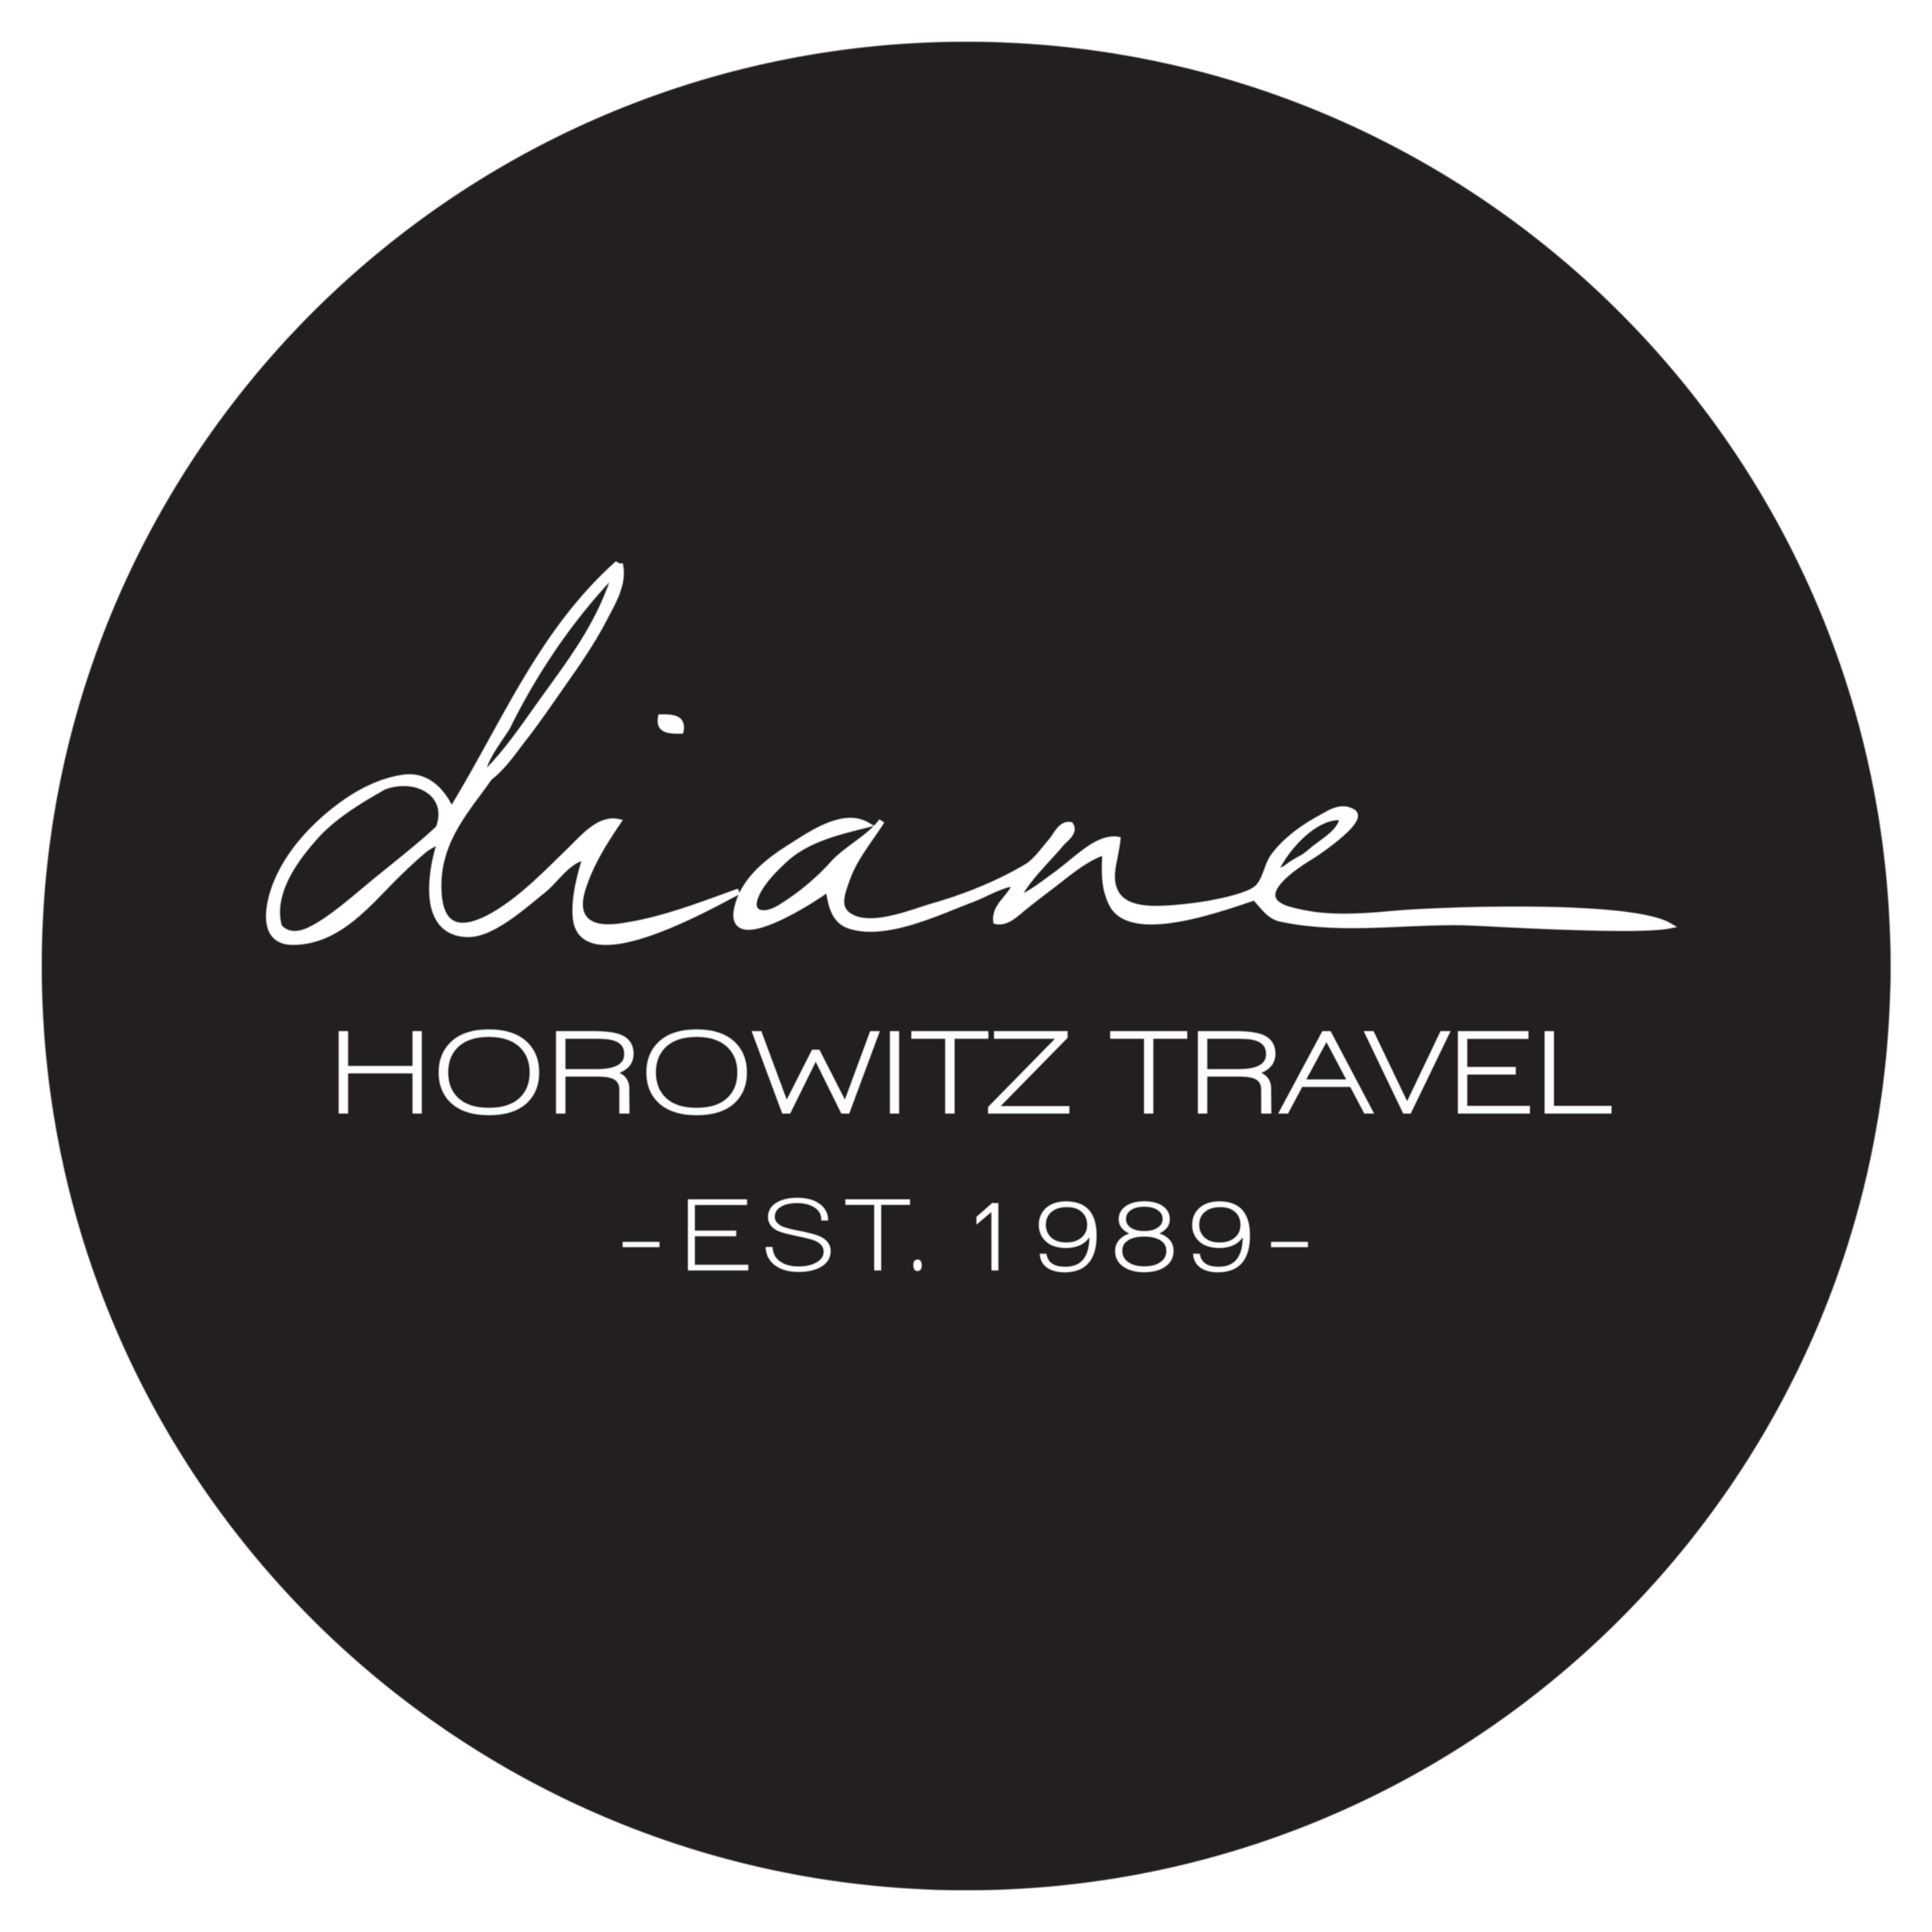 horowitz travel